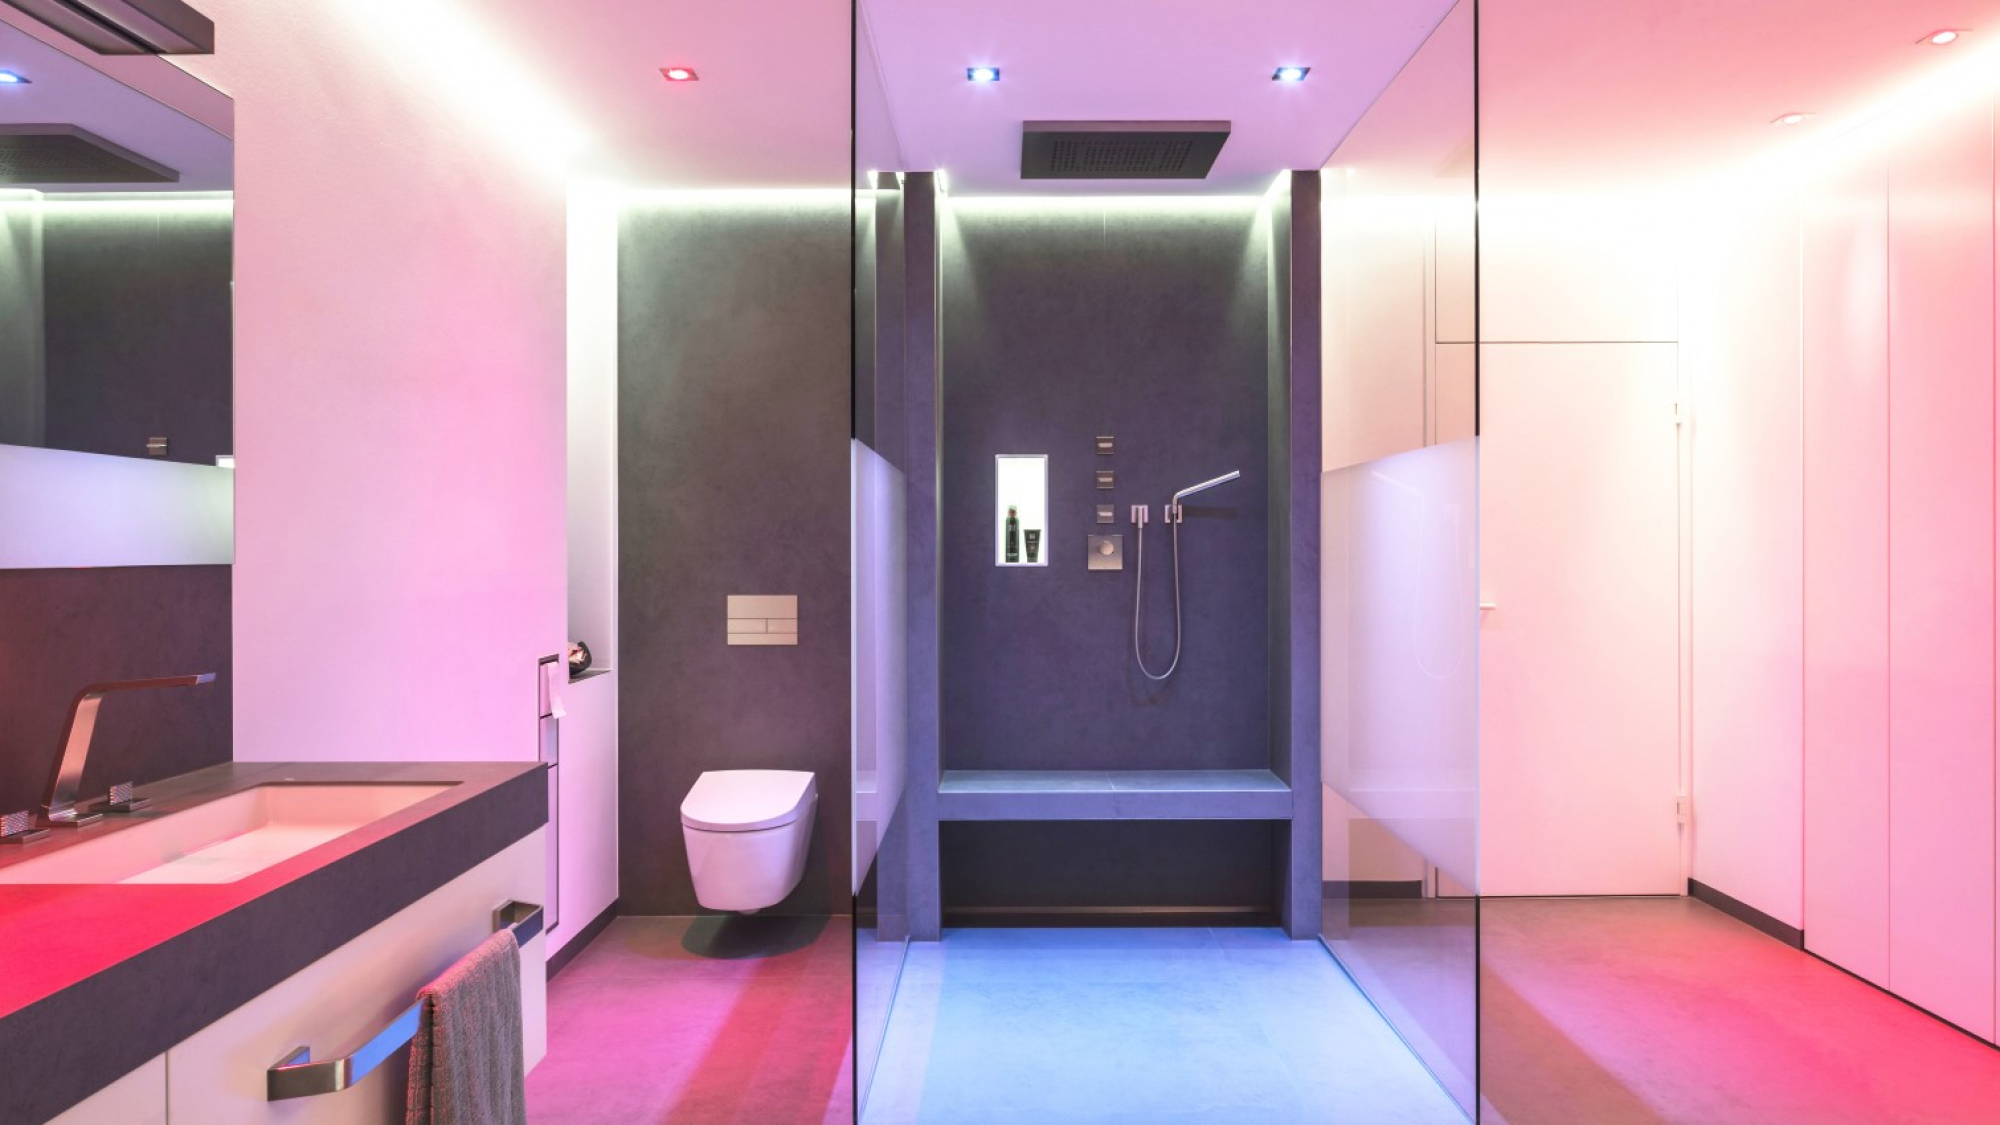 Abbildung Badezimmer mit Beleuchtung von Brumberg; Dusche, WC und Waschtisch